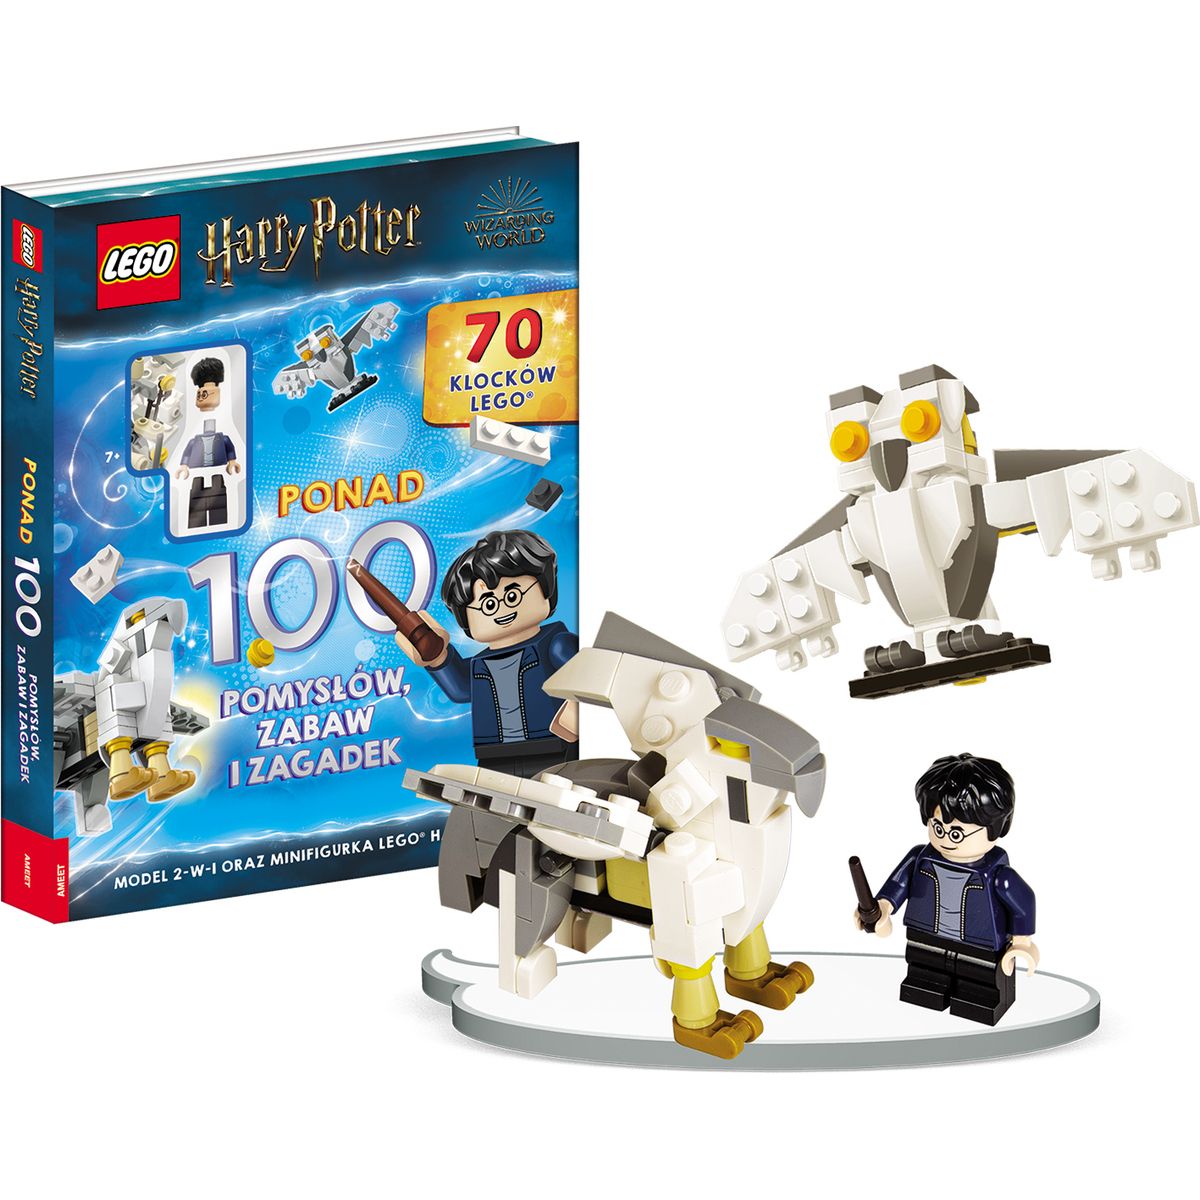 Książka dla dzieci LEGO® Harry Potter™. Ponad 100 pomysłów, zabaw i zagadek Ameet (LQB6401)